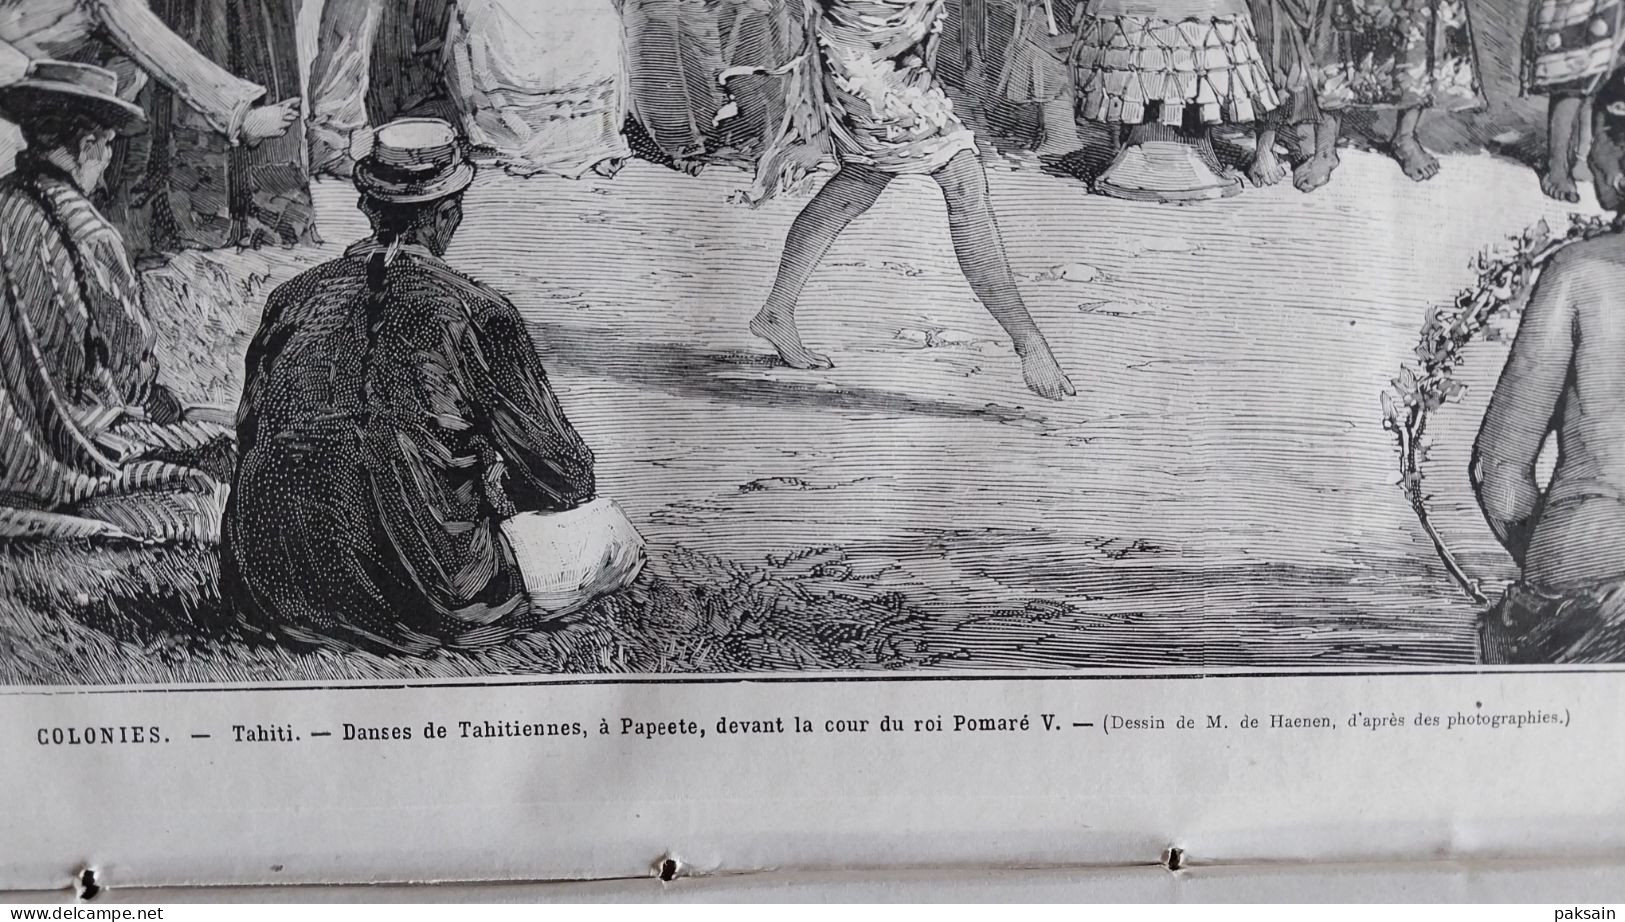 Le Monde illustré 1882 Paris / Le chemin de fer du Saint-Gothard Suisse / Tahiti danses tahitiennes à Papeete Pomaré V